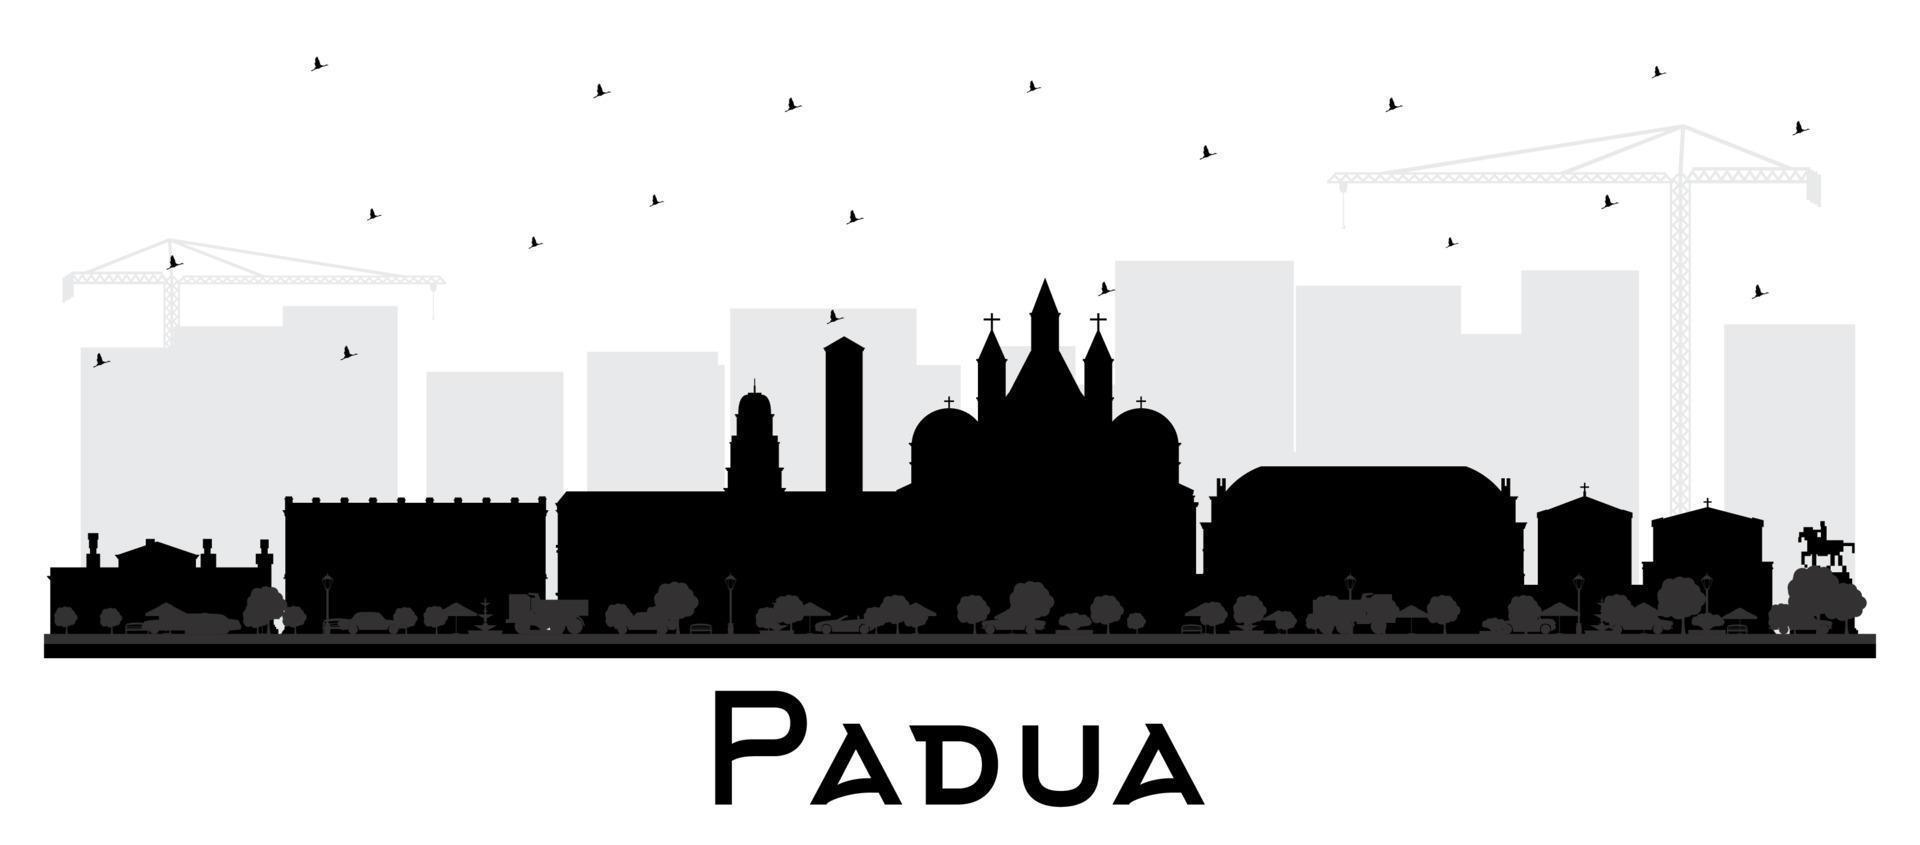 padua italien city skyline silhouette mit schwarzen gebäuden isoliert auf weiß. vektor